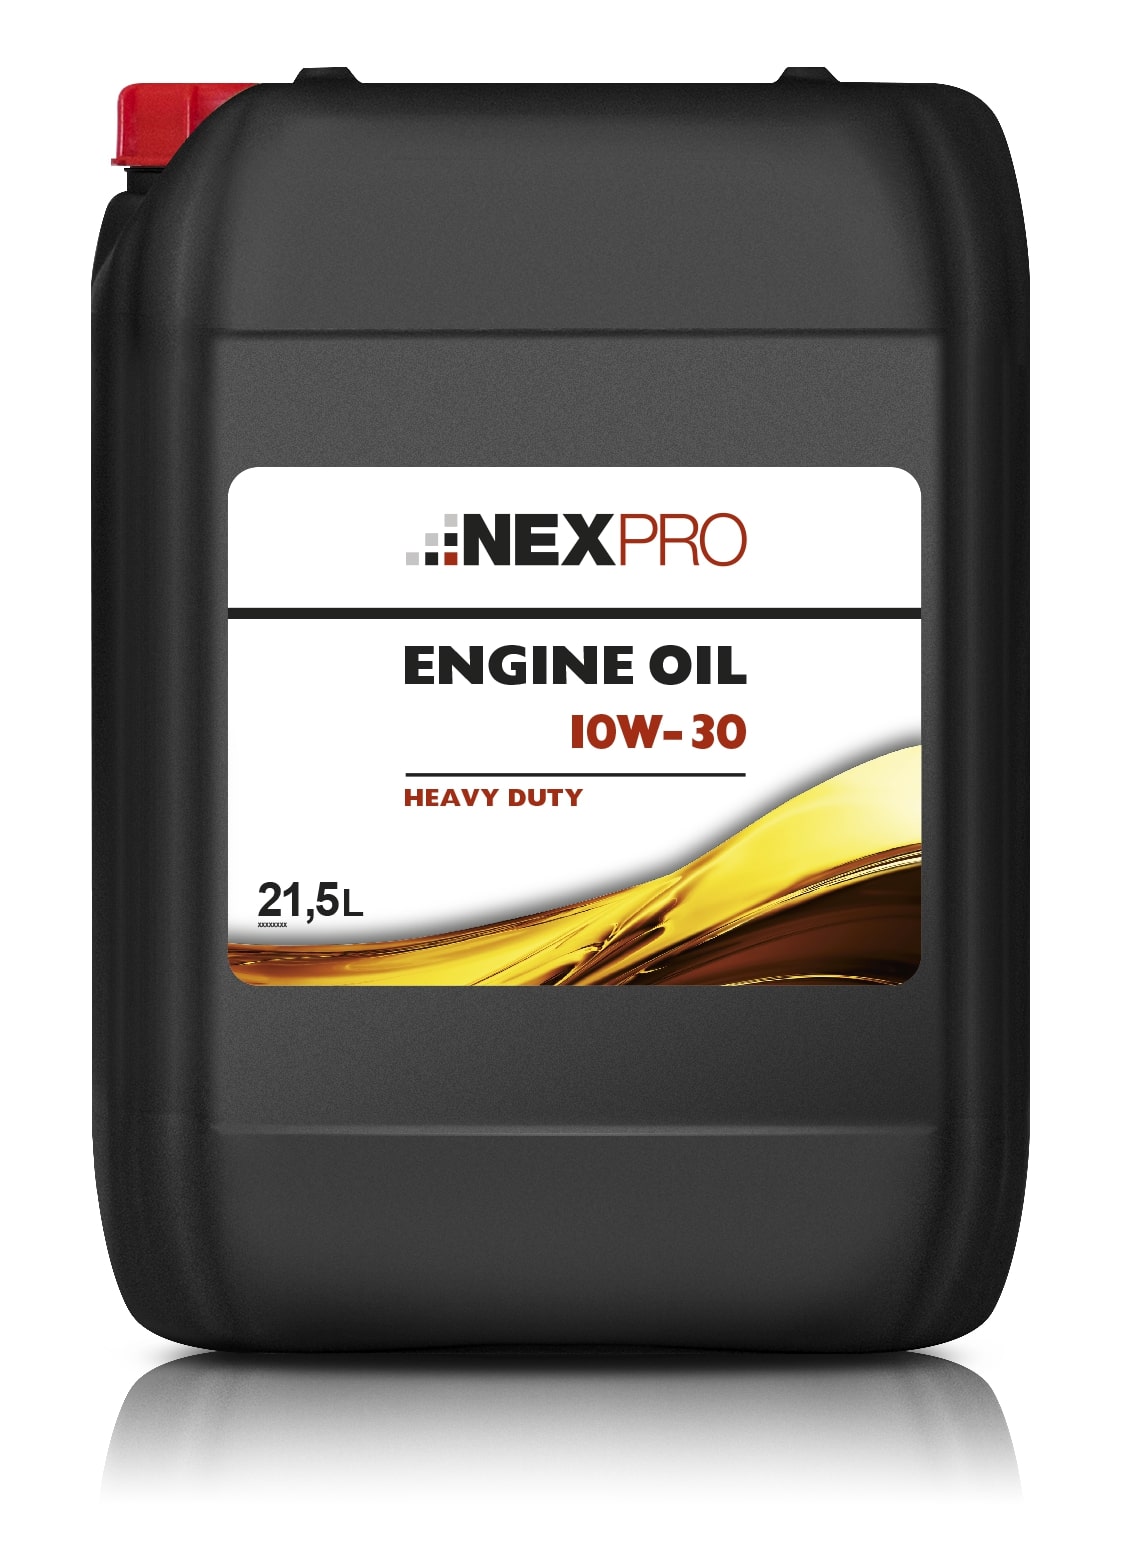 NEXPRO Heavy Duty Engine Oil 10W-30